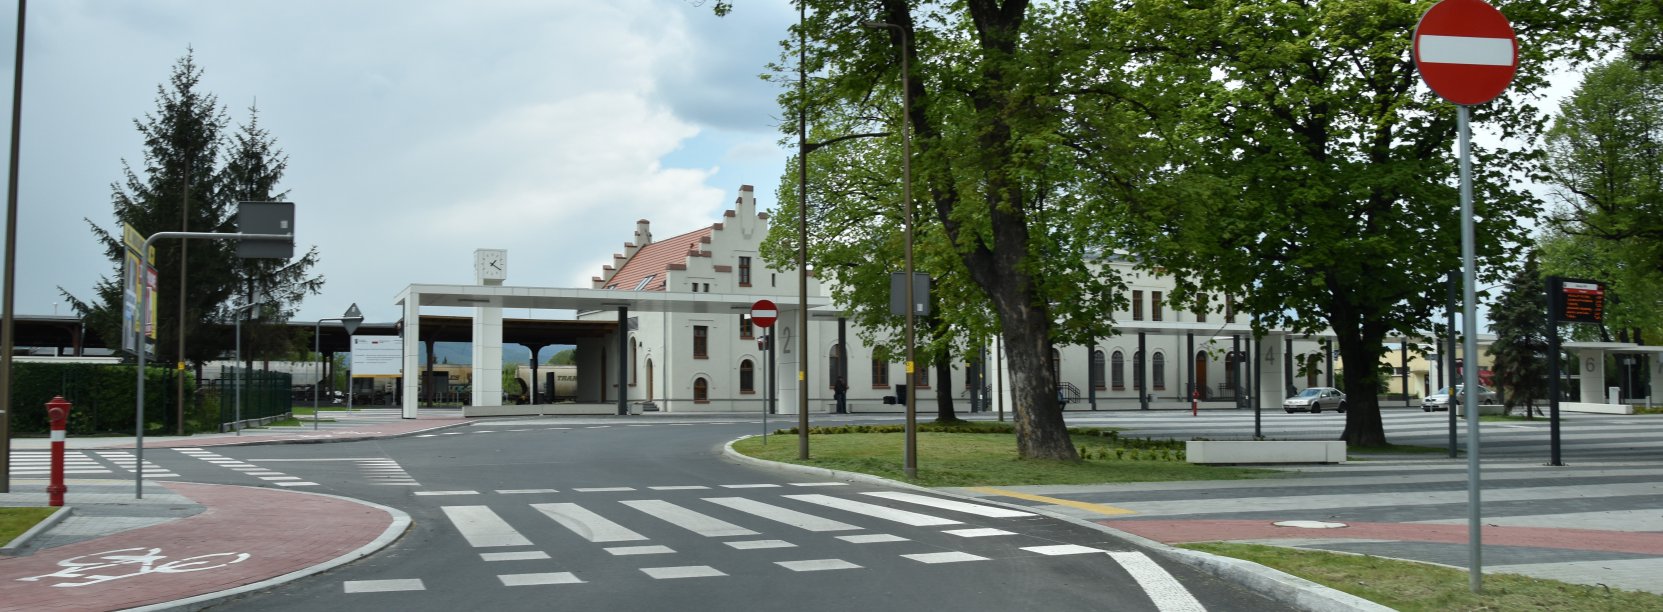 Widok  na drogę i perony dworca kolejowego